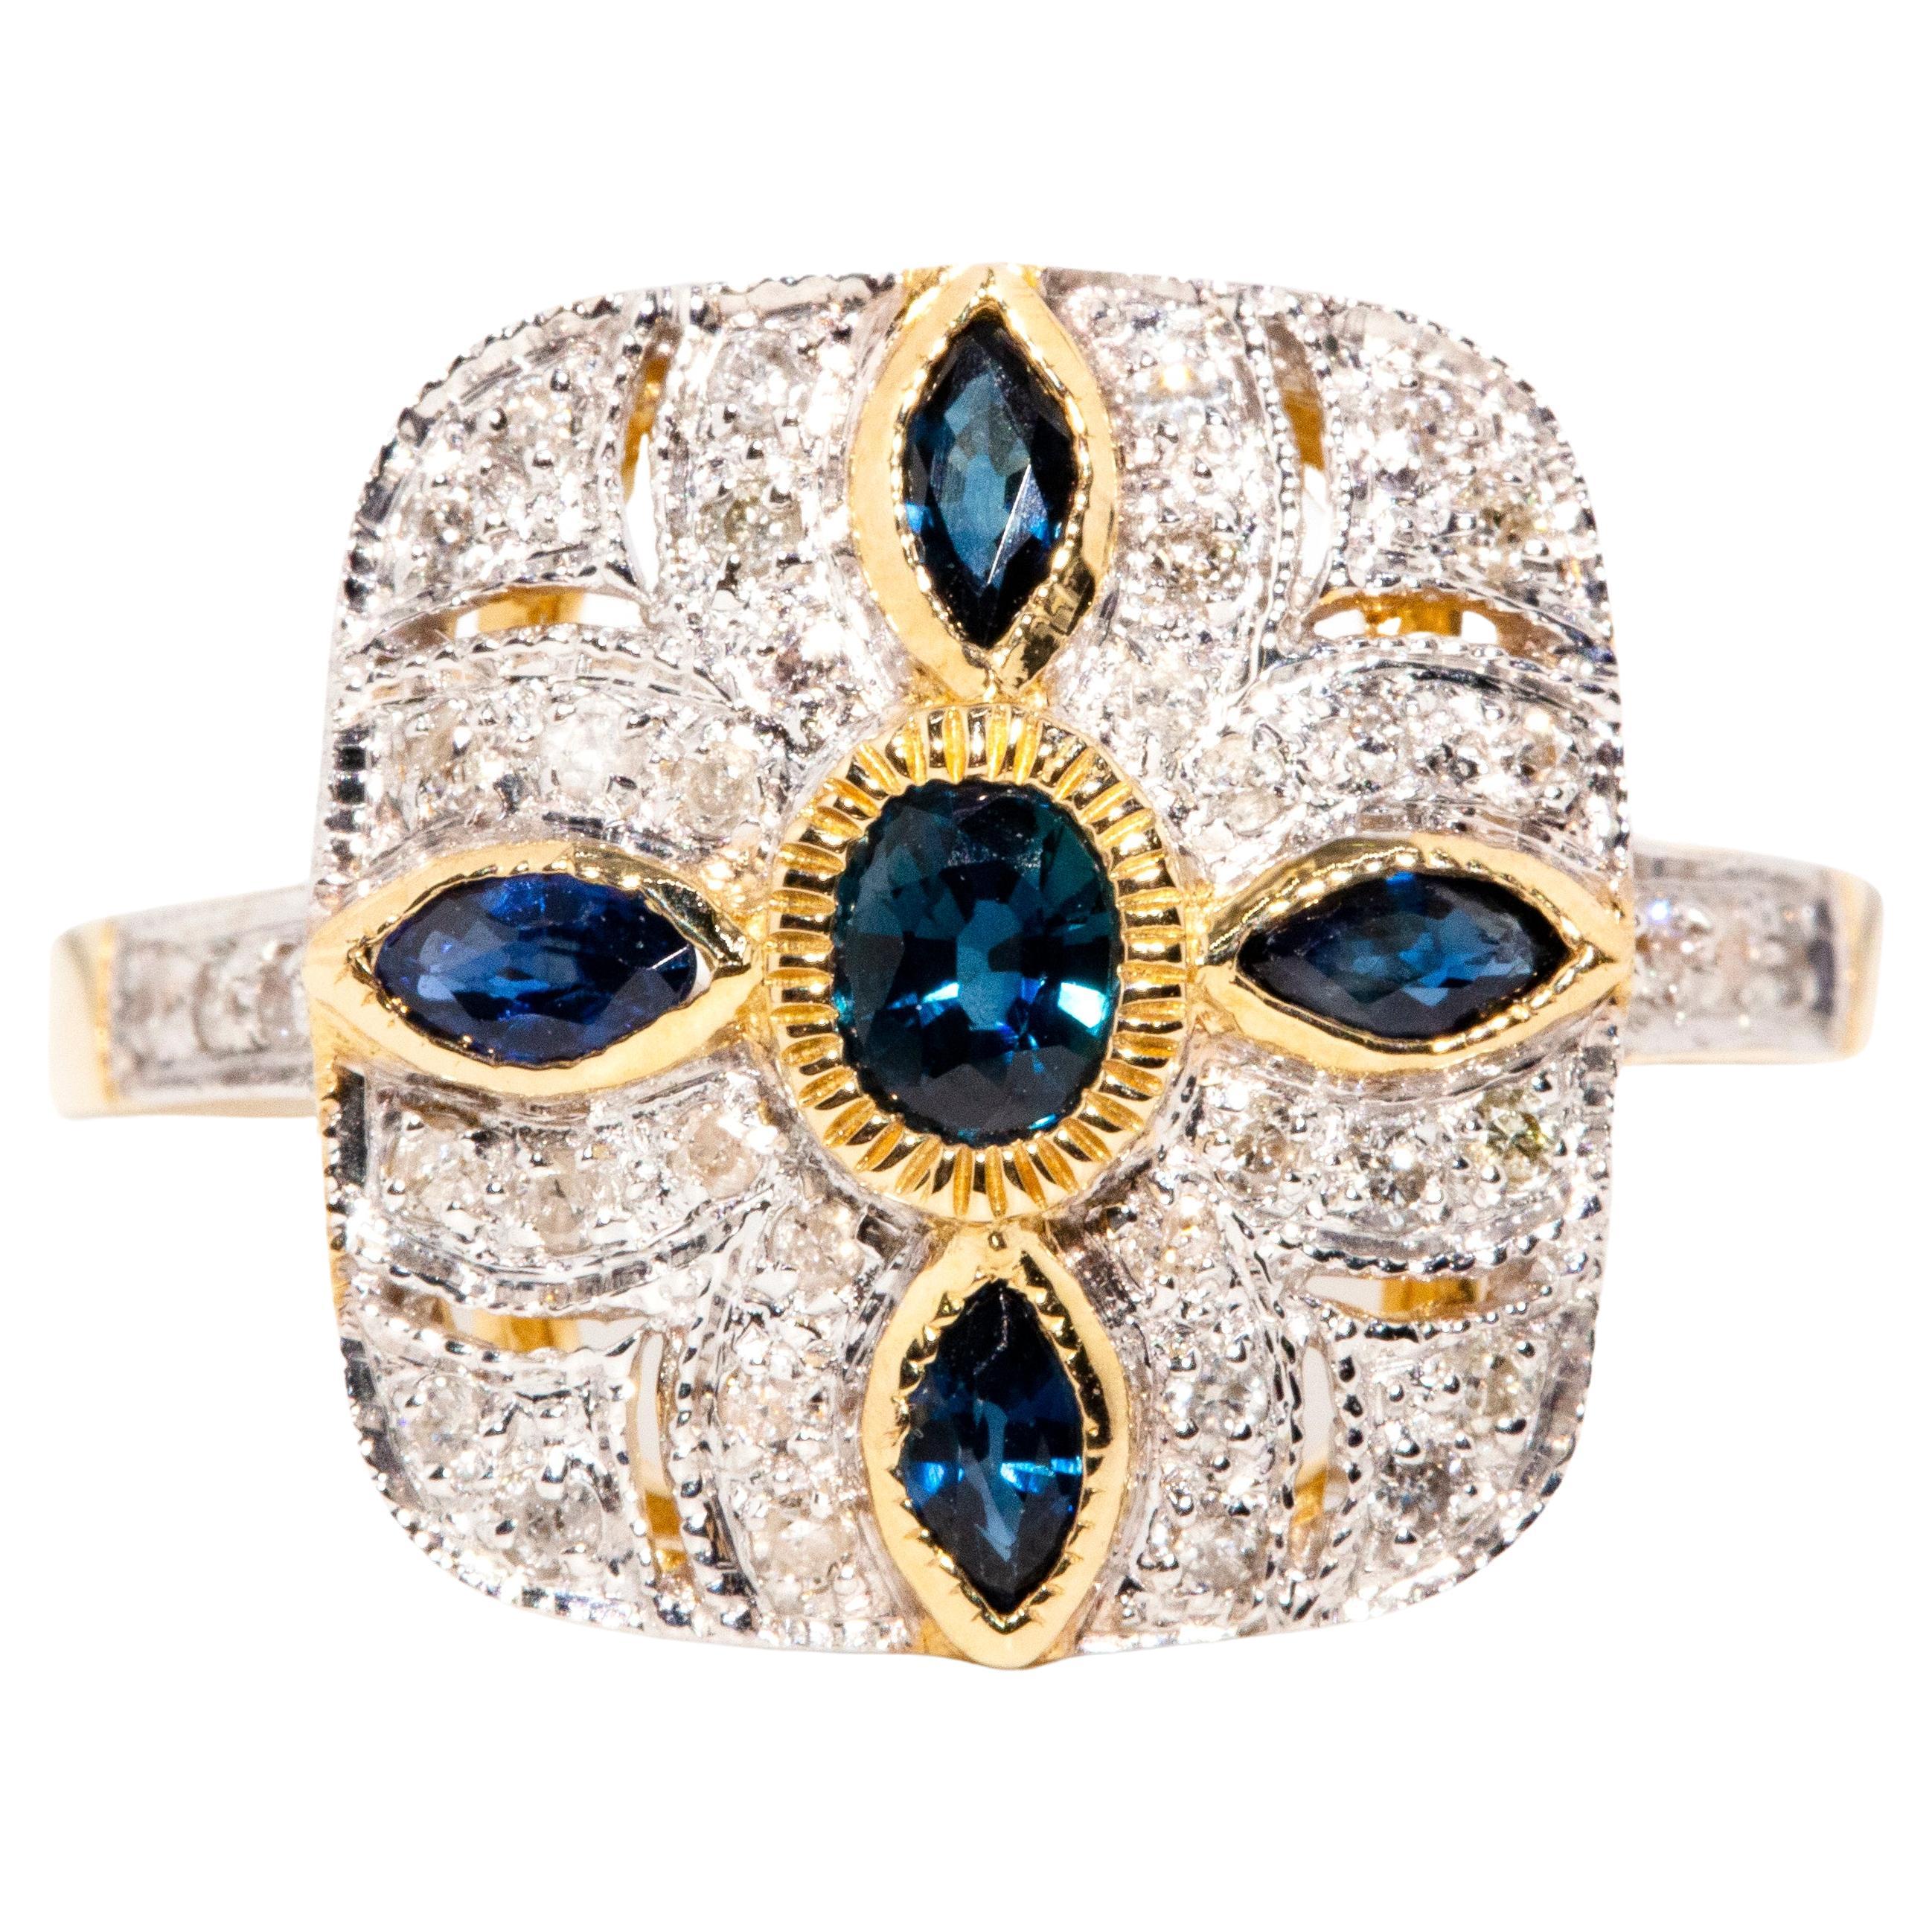 Vintage inspirierter tiefblauer Saphir & Diamant-Cluster-Ring 9 Karat Gelbgold